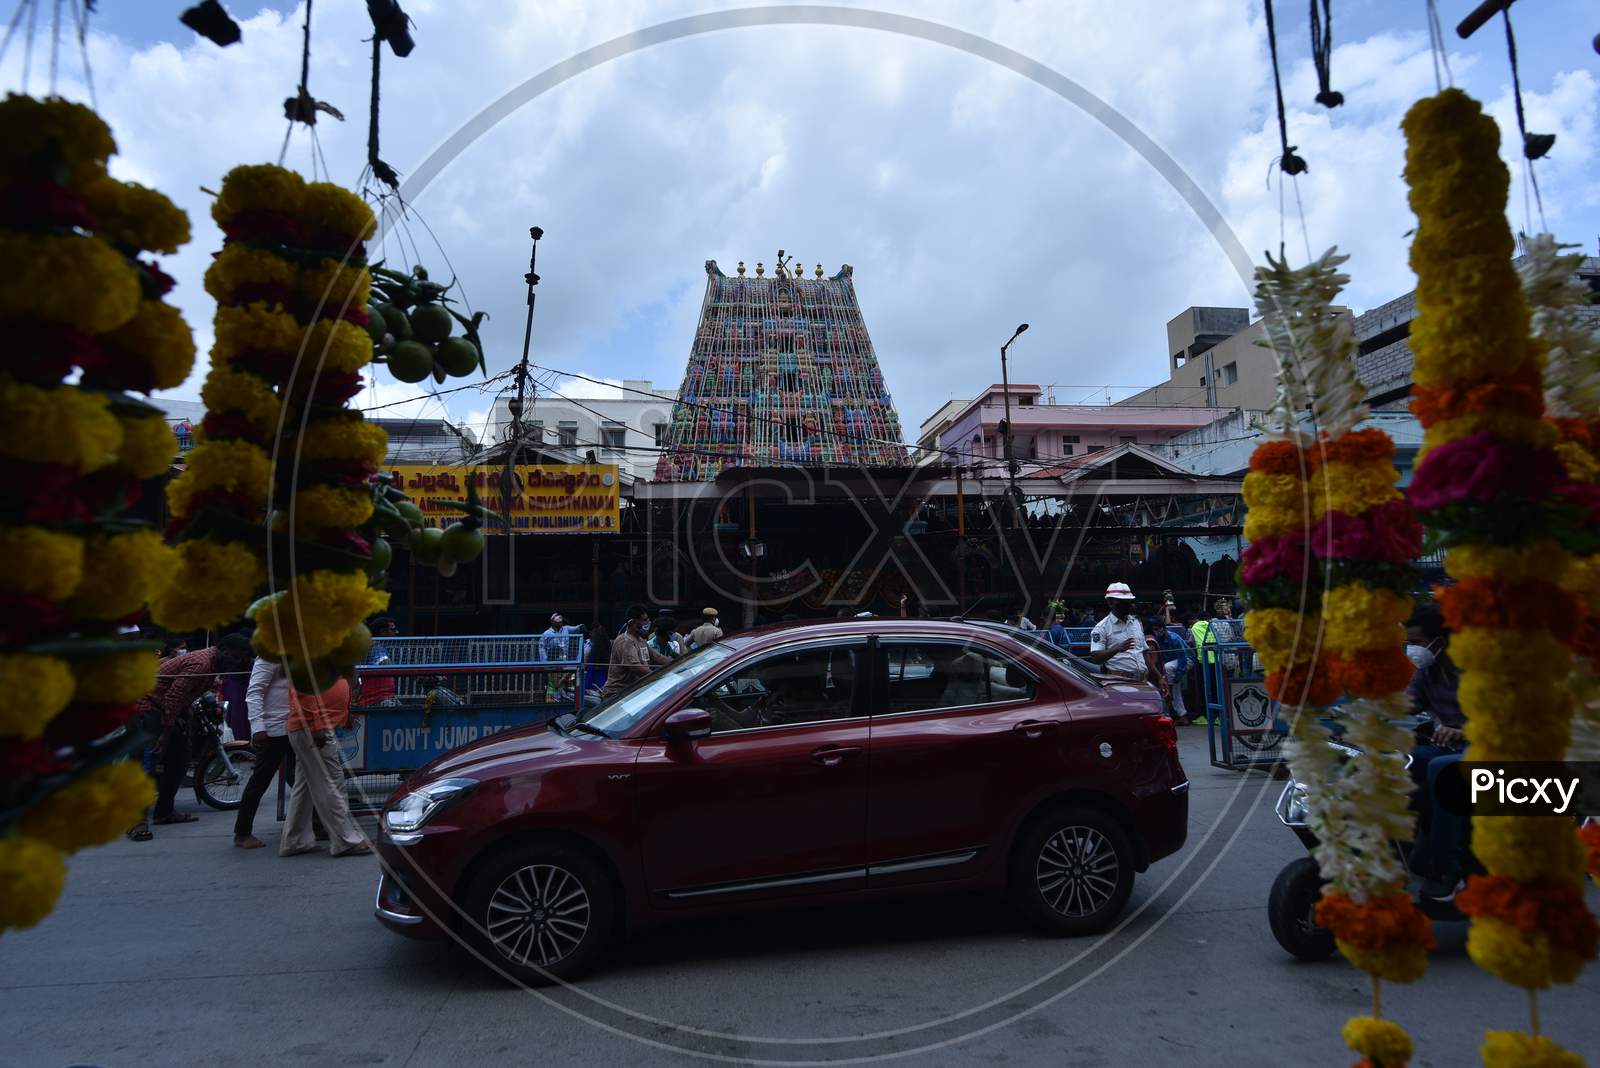 Balkampet Yellamma Pochamma temple, Bonalu 2020